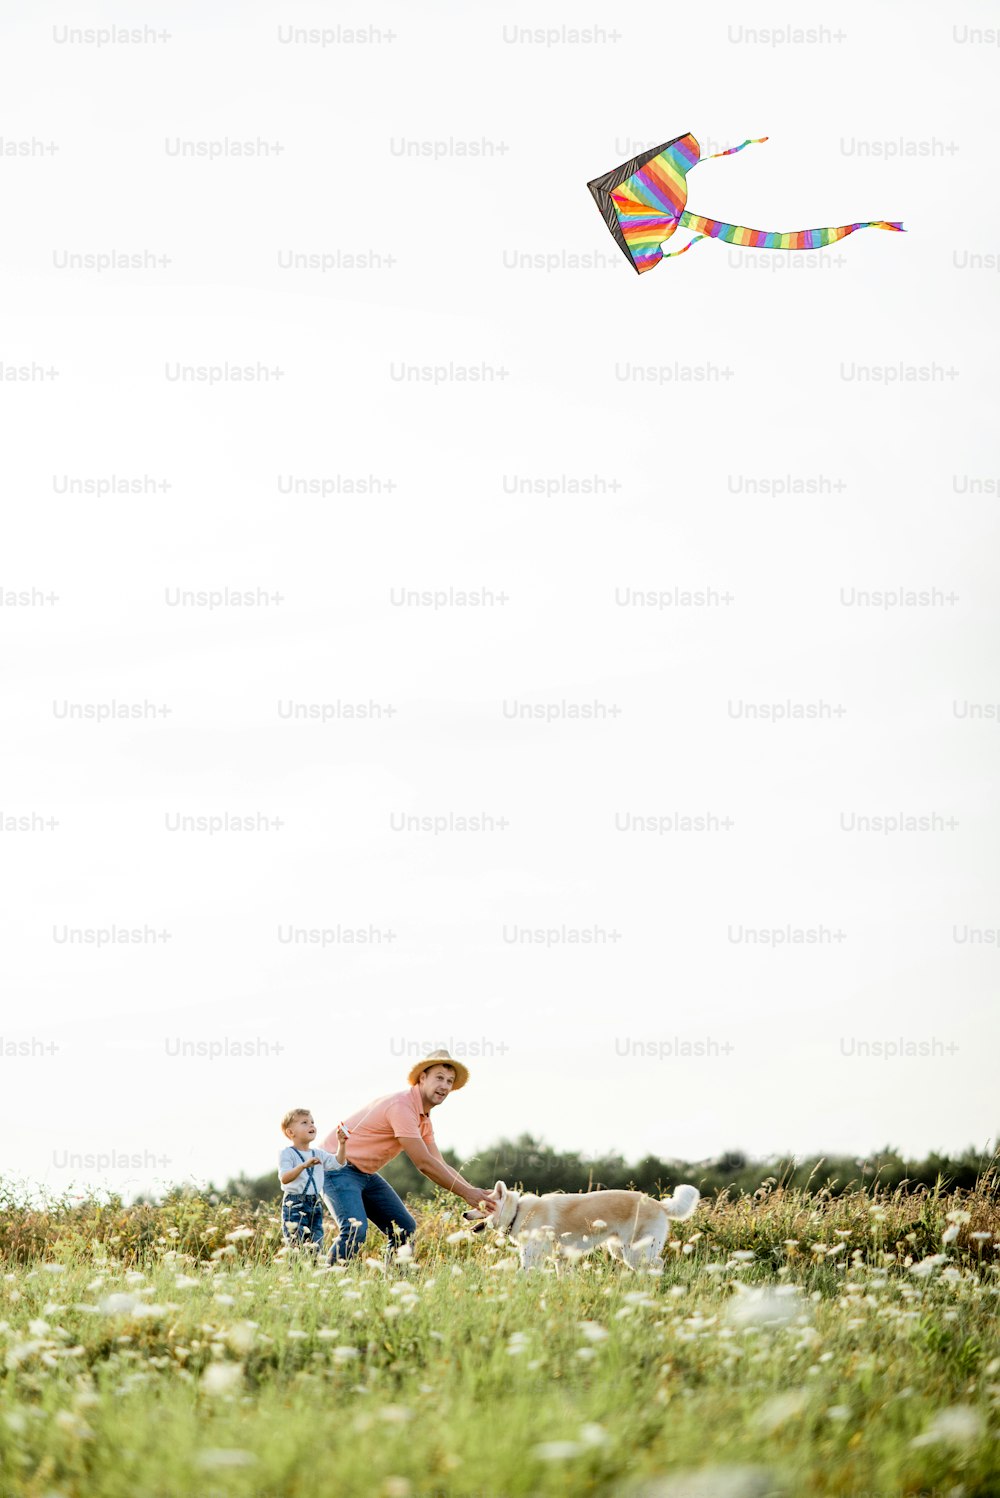 Un père et son fils lancent un cerf-volant coloré sur le terrain au coucher du soleil. Concept d’une famille heureuse qui s’amuse pendant l’activité estivale